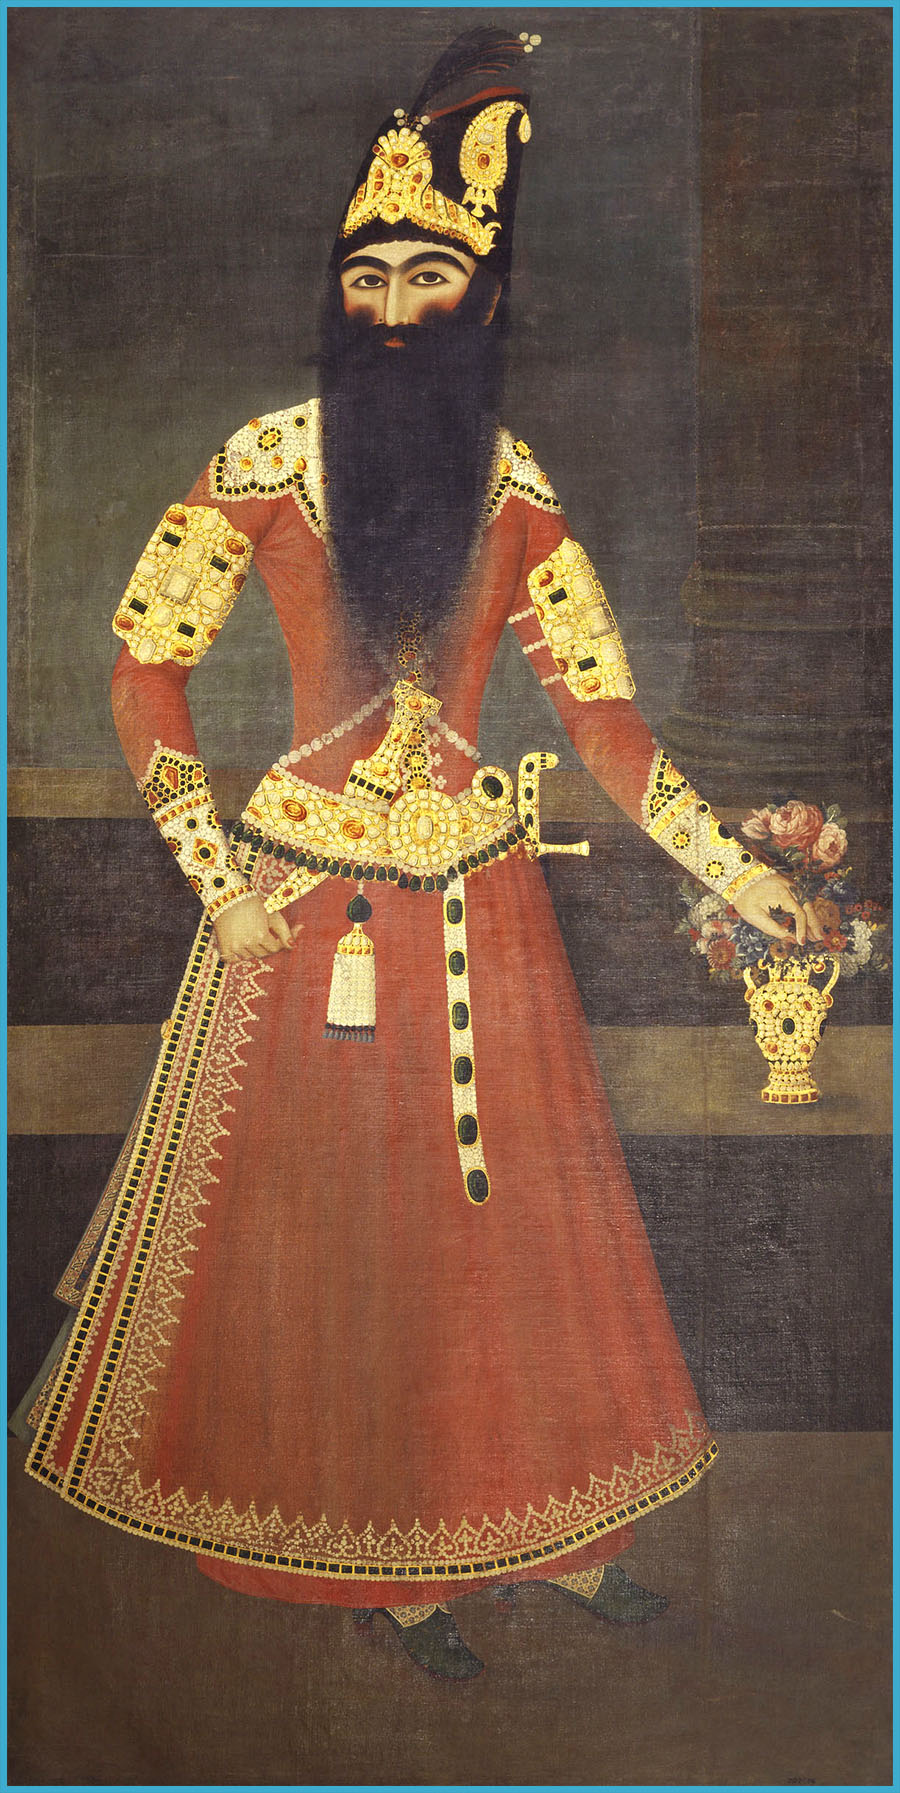 نقاشی عبدالله خان از فتحعلی شاه